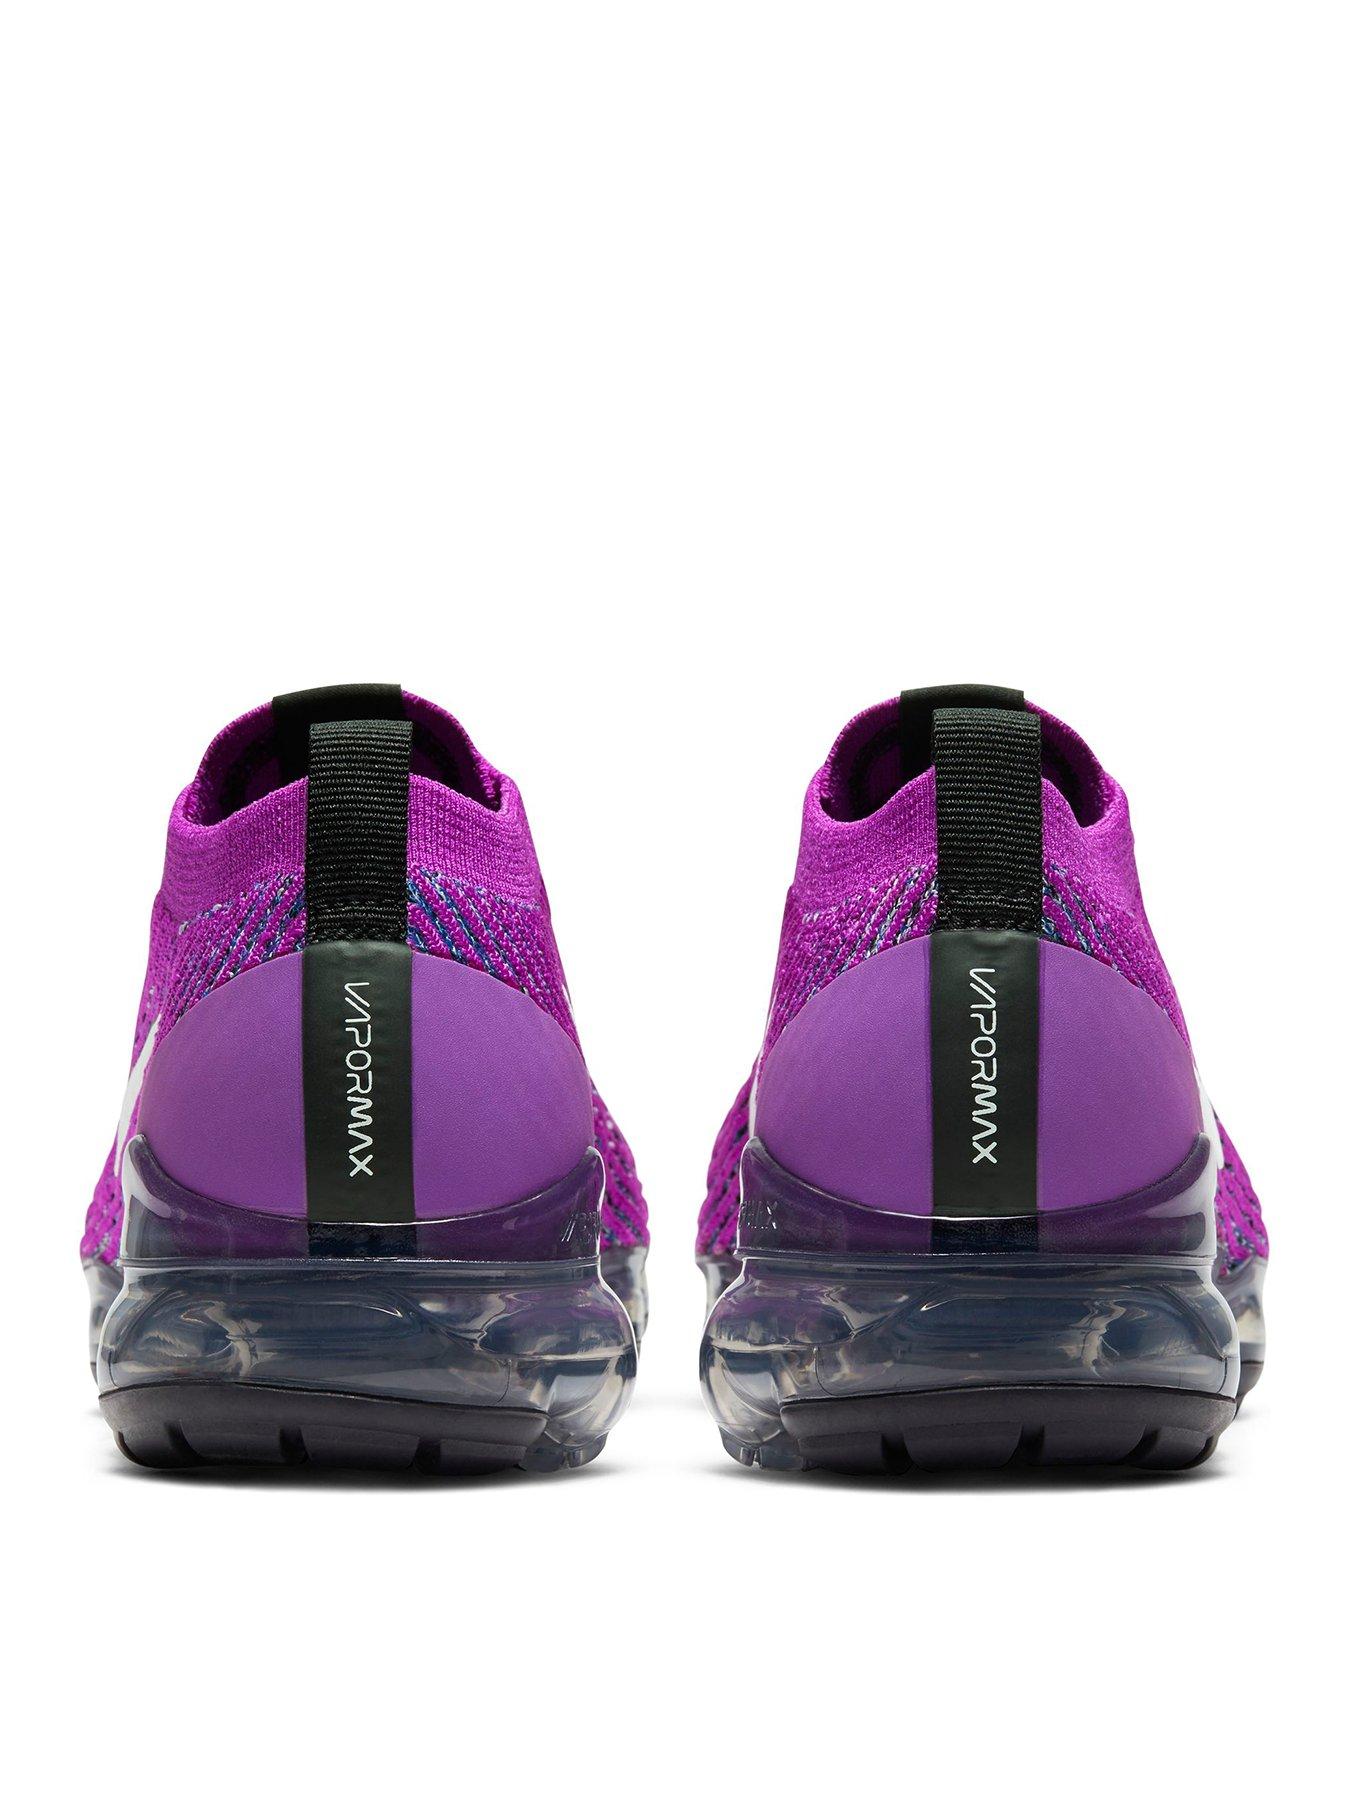 vapormax shoes purple